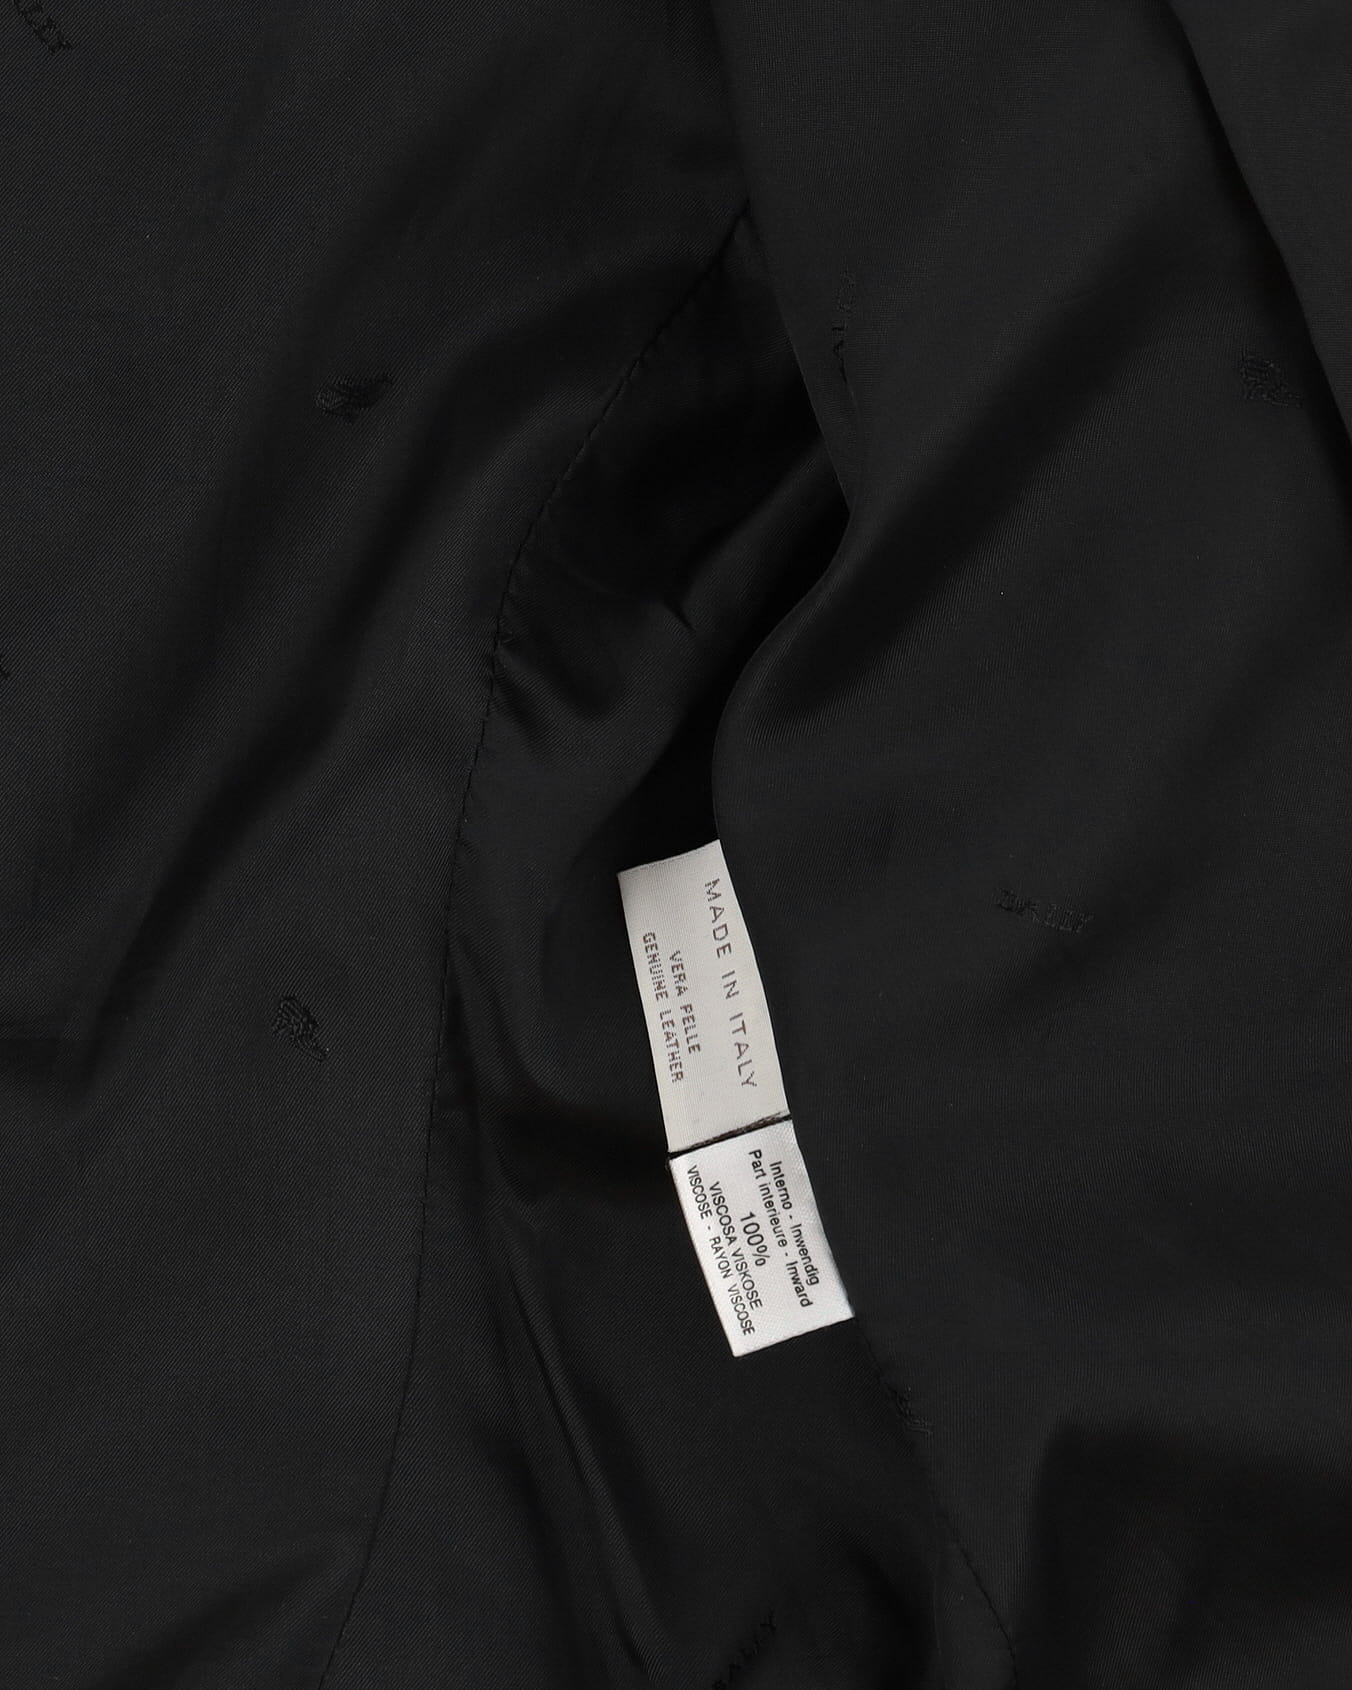 Bally Black Leather Jacket - S